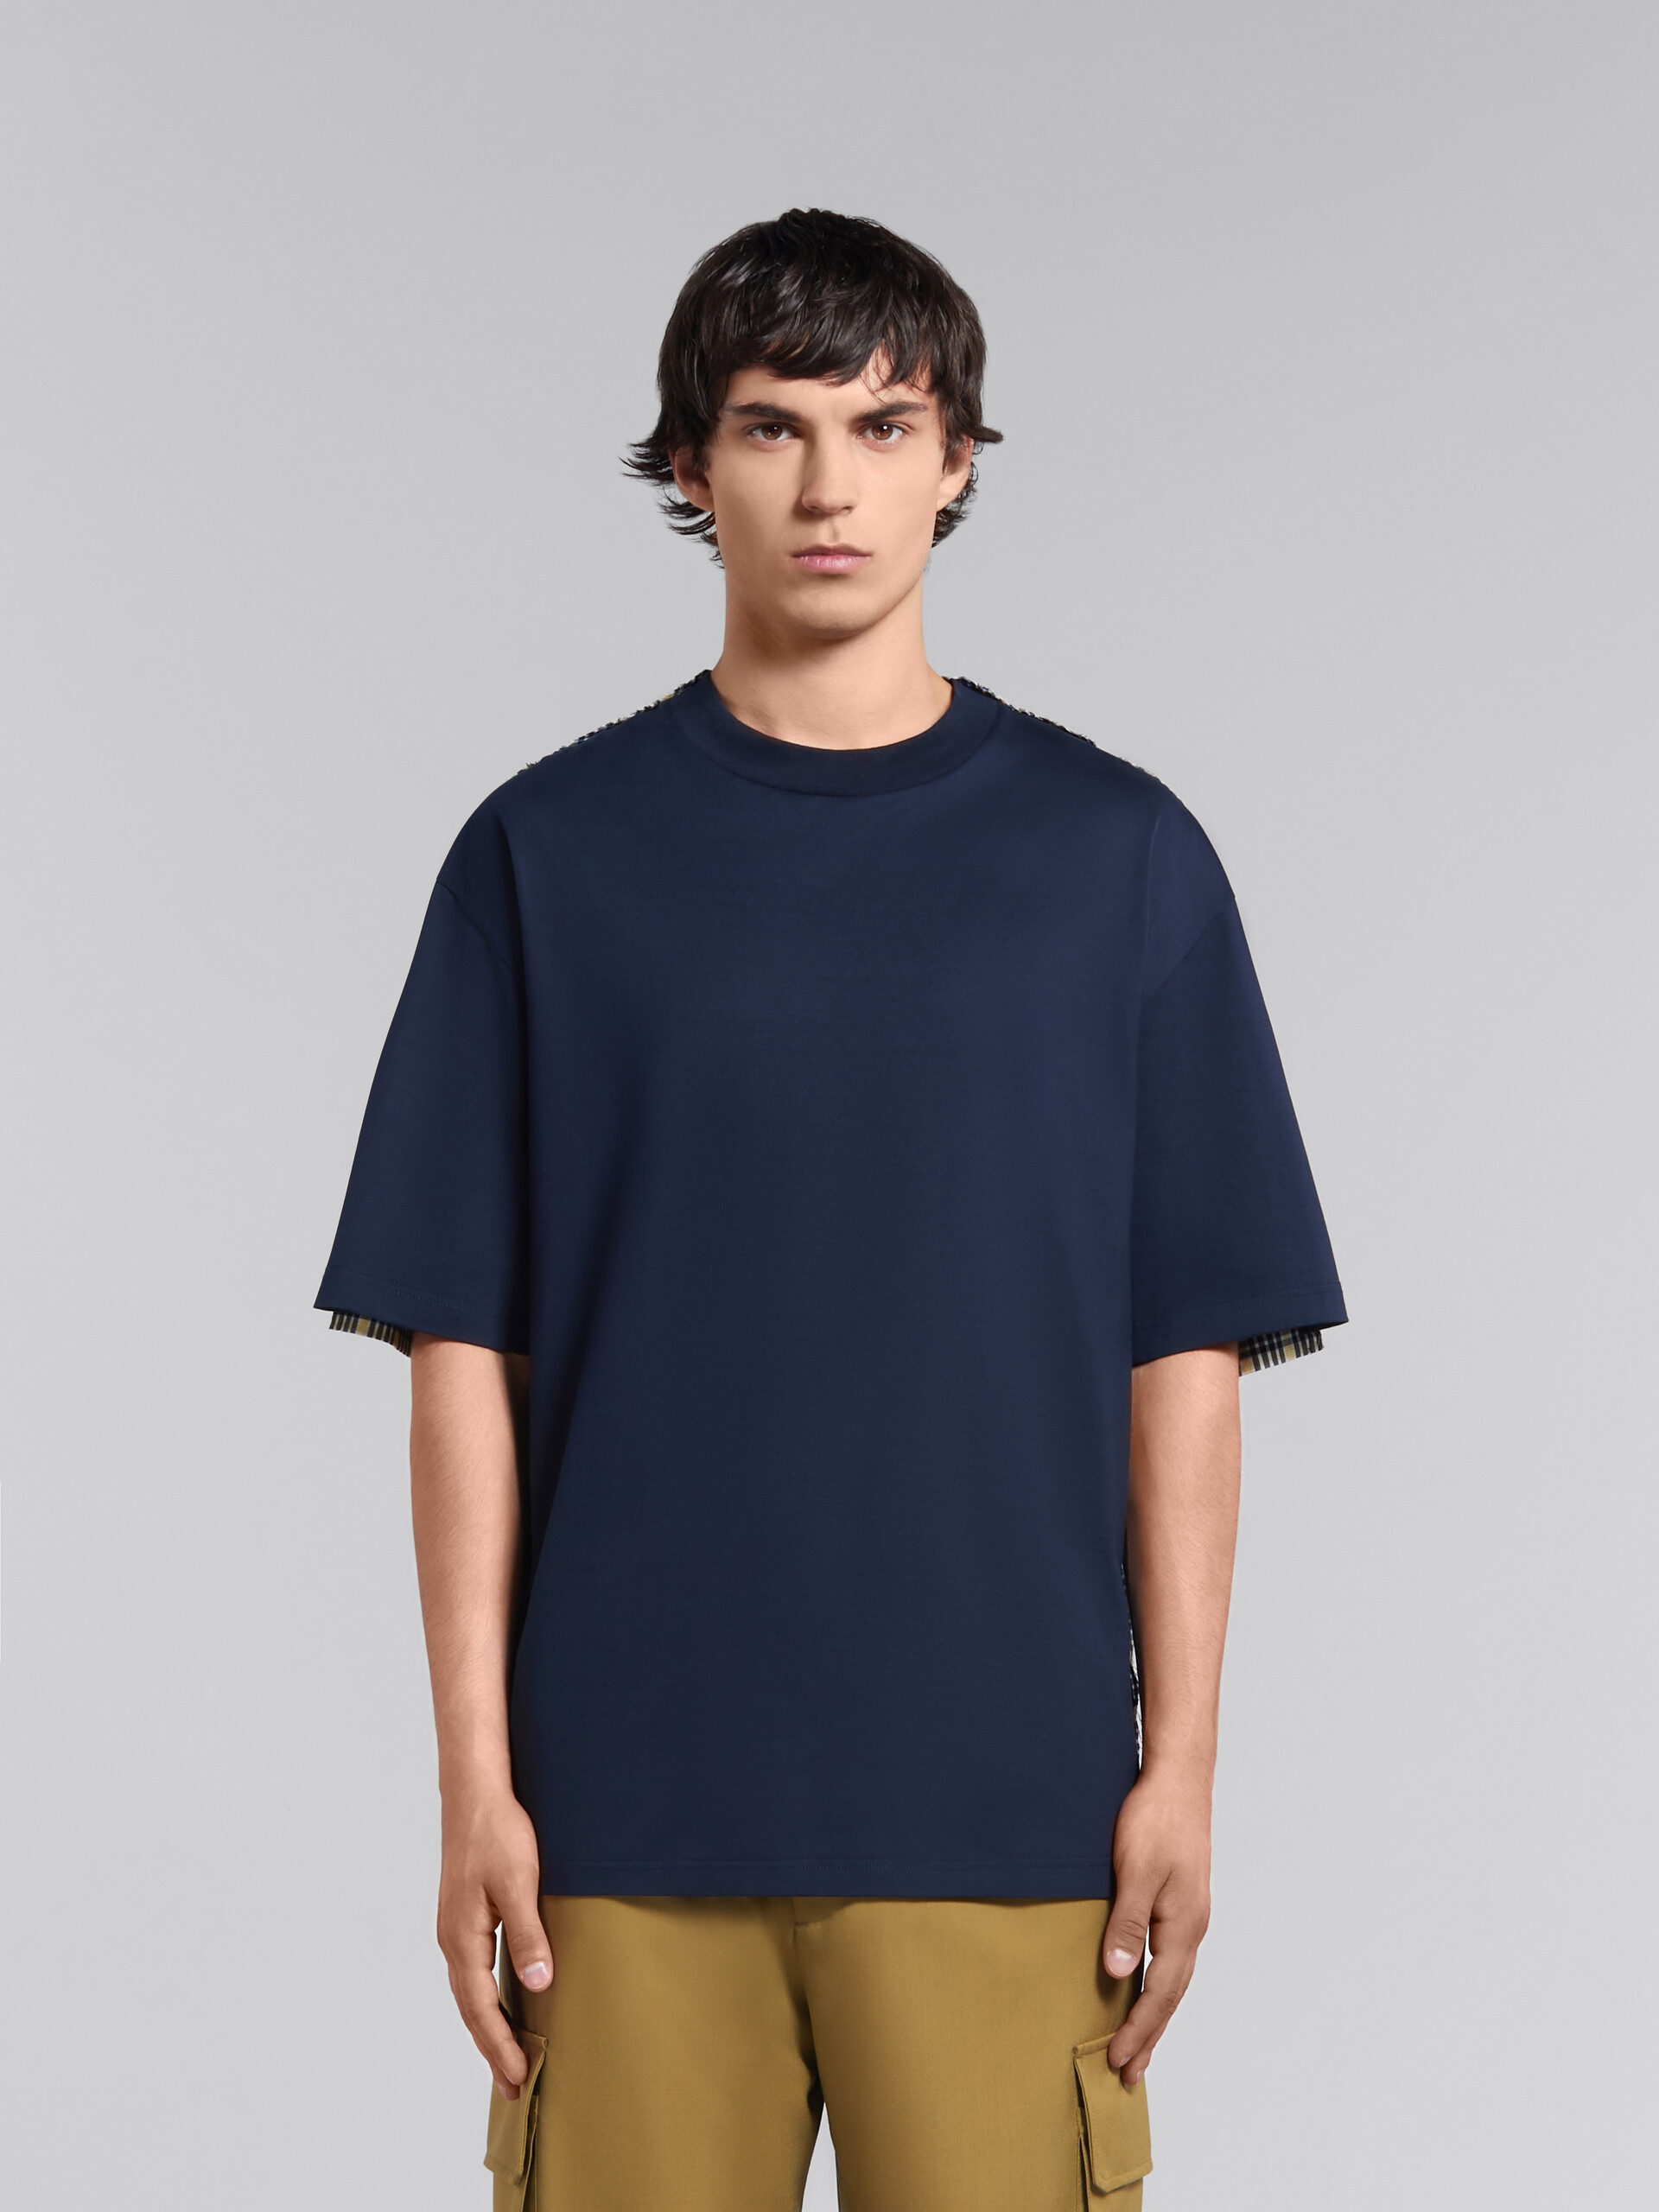 Dunkelblaues T-Shirt aus Bio-Baumwolle mit karierter Rückseite - T-shirts - Image 2